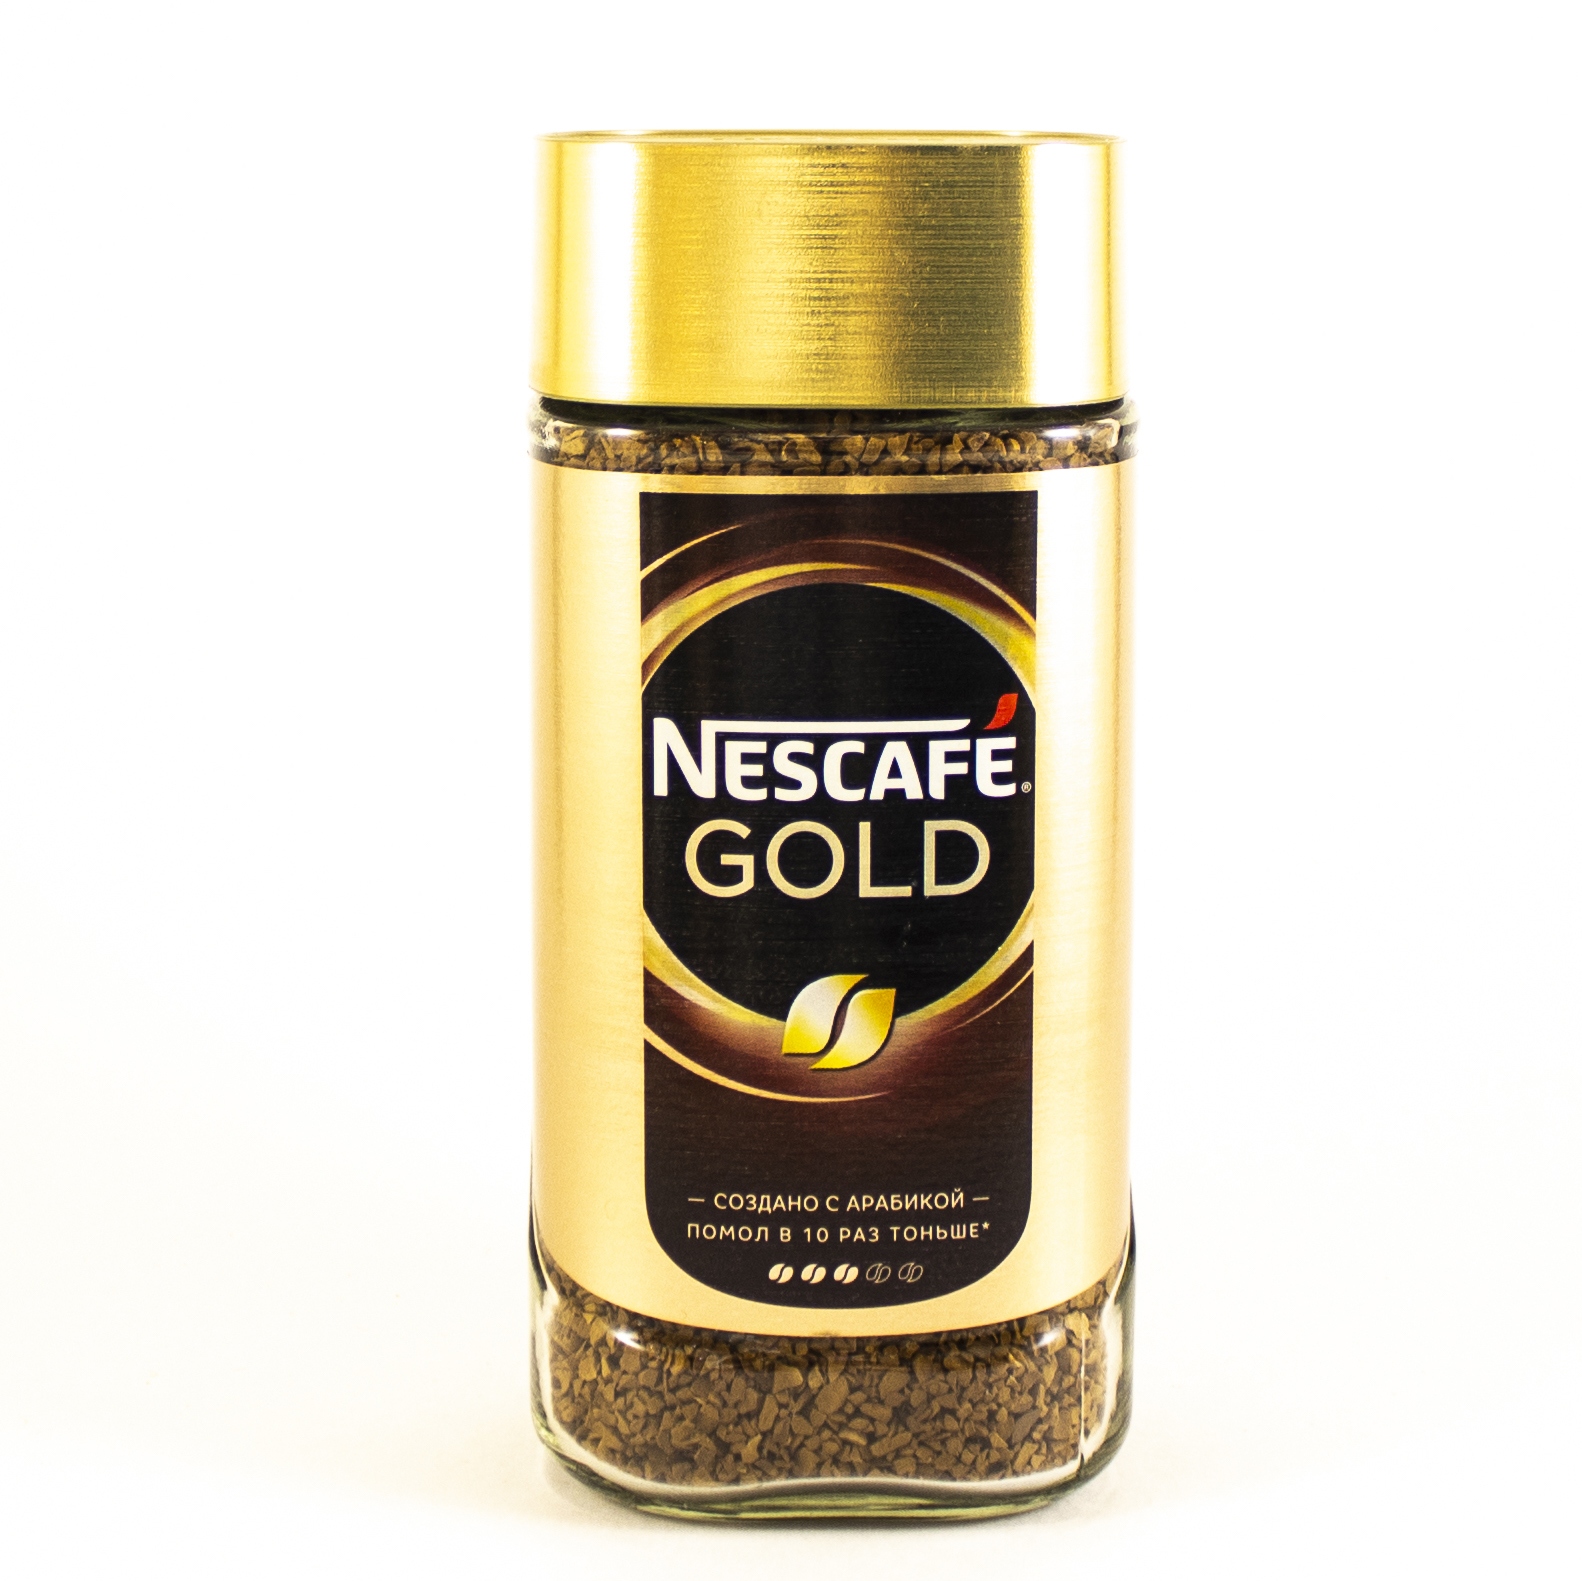 Nescafe gold 190 г. Кофе Нескафе Голд 190 гр. Кофе растворимый Нескафе Голд 190г. Кофе Nescafe Gold 190г. Кофе "Nescafe" Голд 190г.